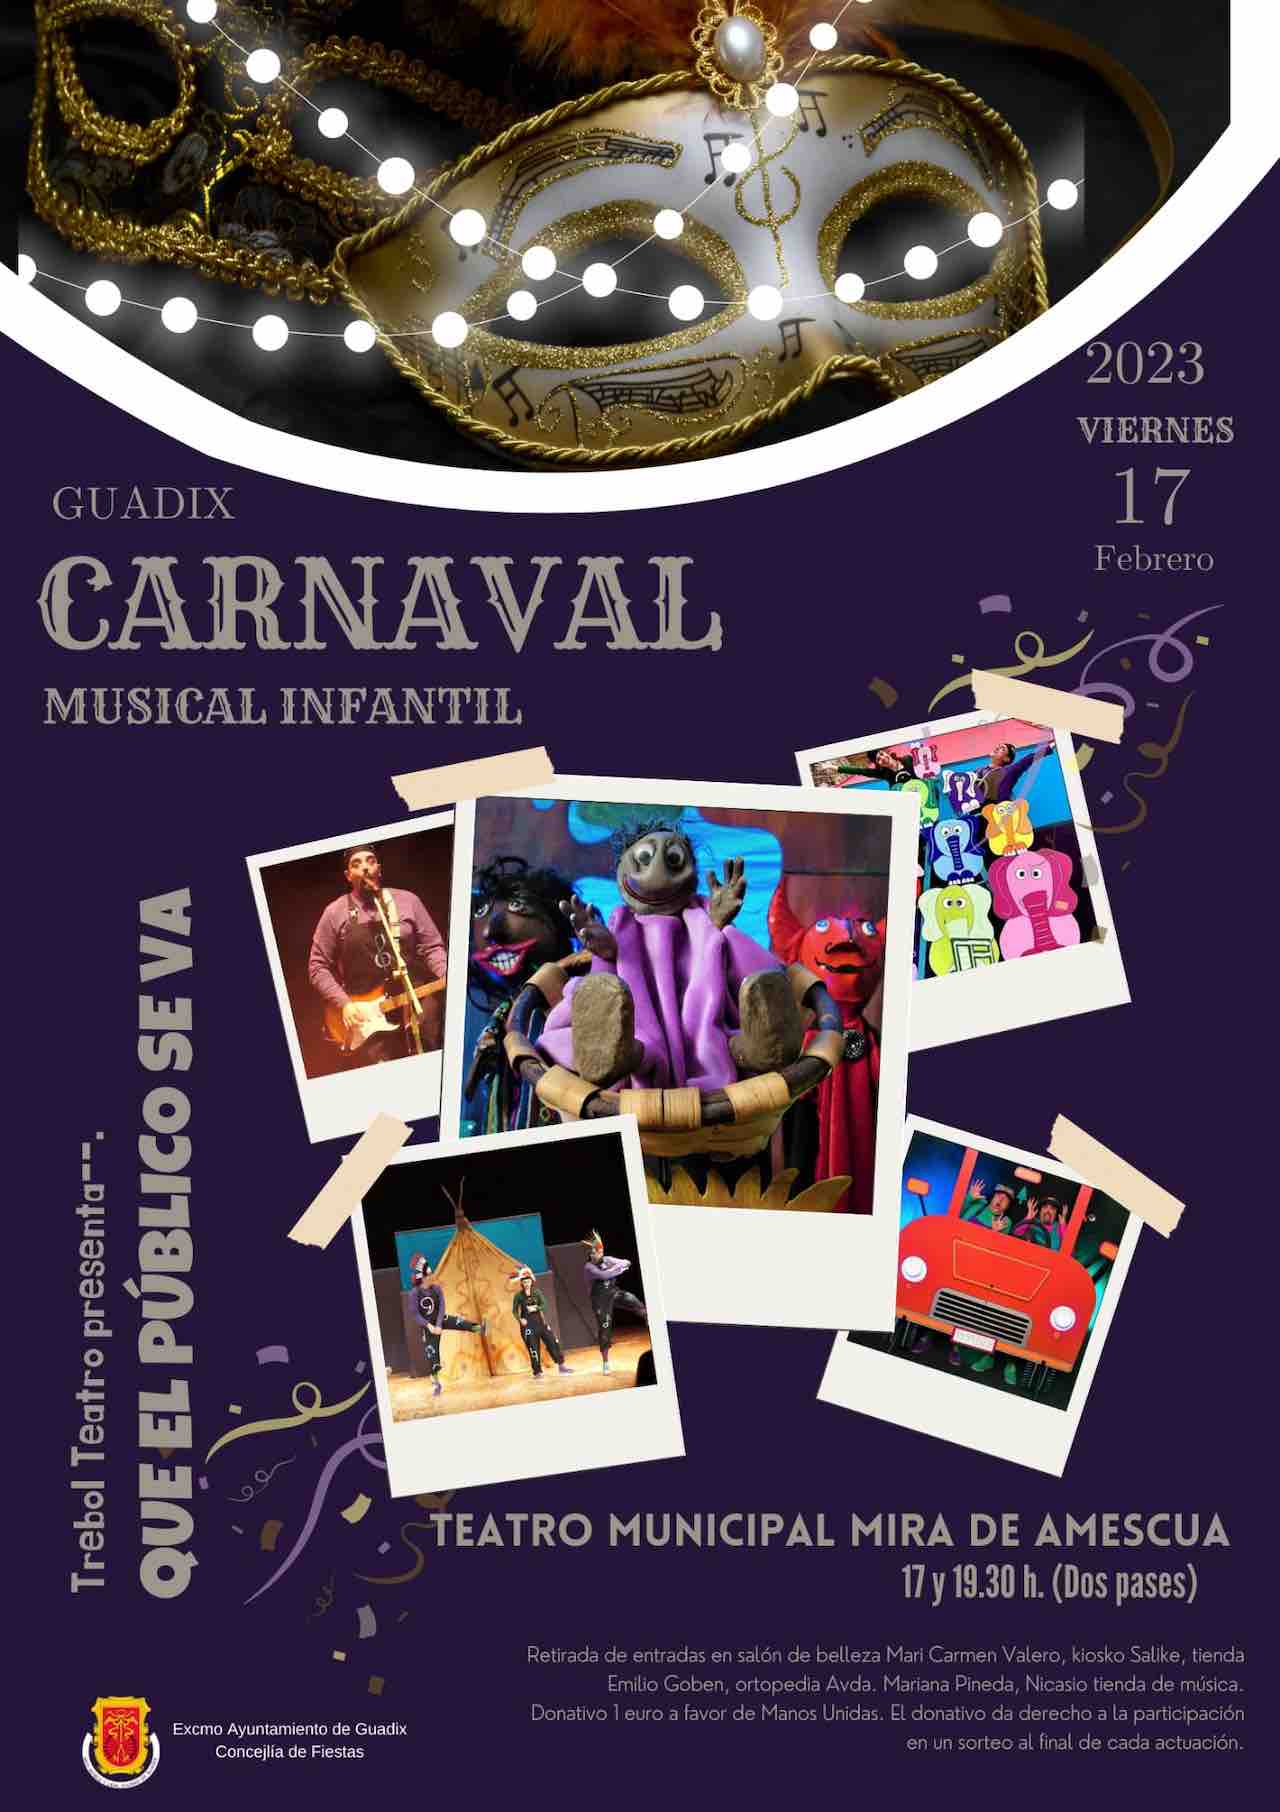 Carnaval Guadix